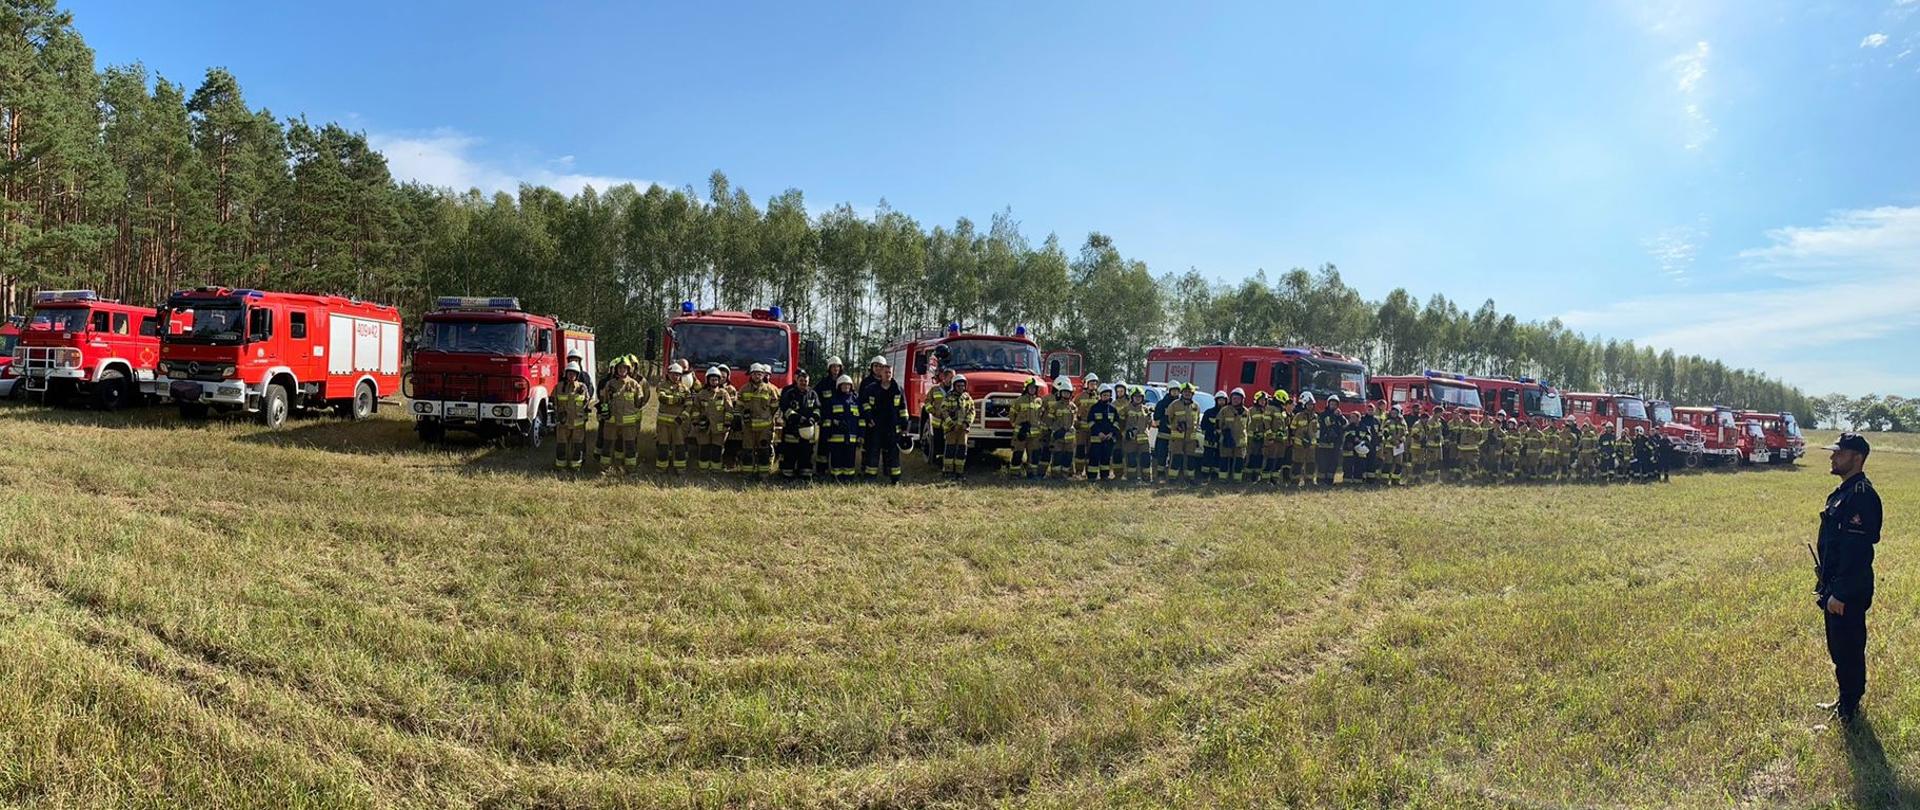 Fotografia panoramiczna przedstawiająca pojazdy kompanii gaśniczej, a przed nimi ustawionych kilkudziesięciu strażaków, stojących na polanie.